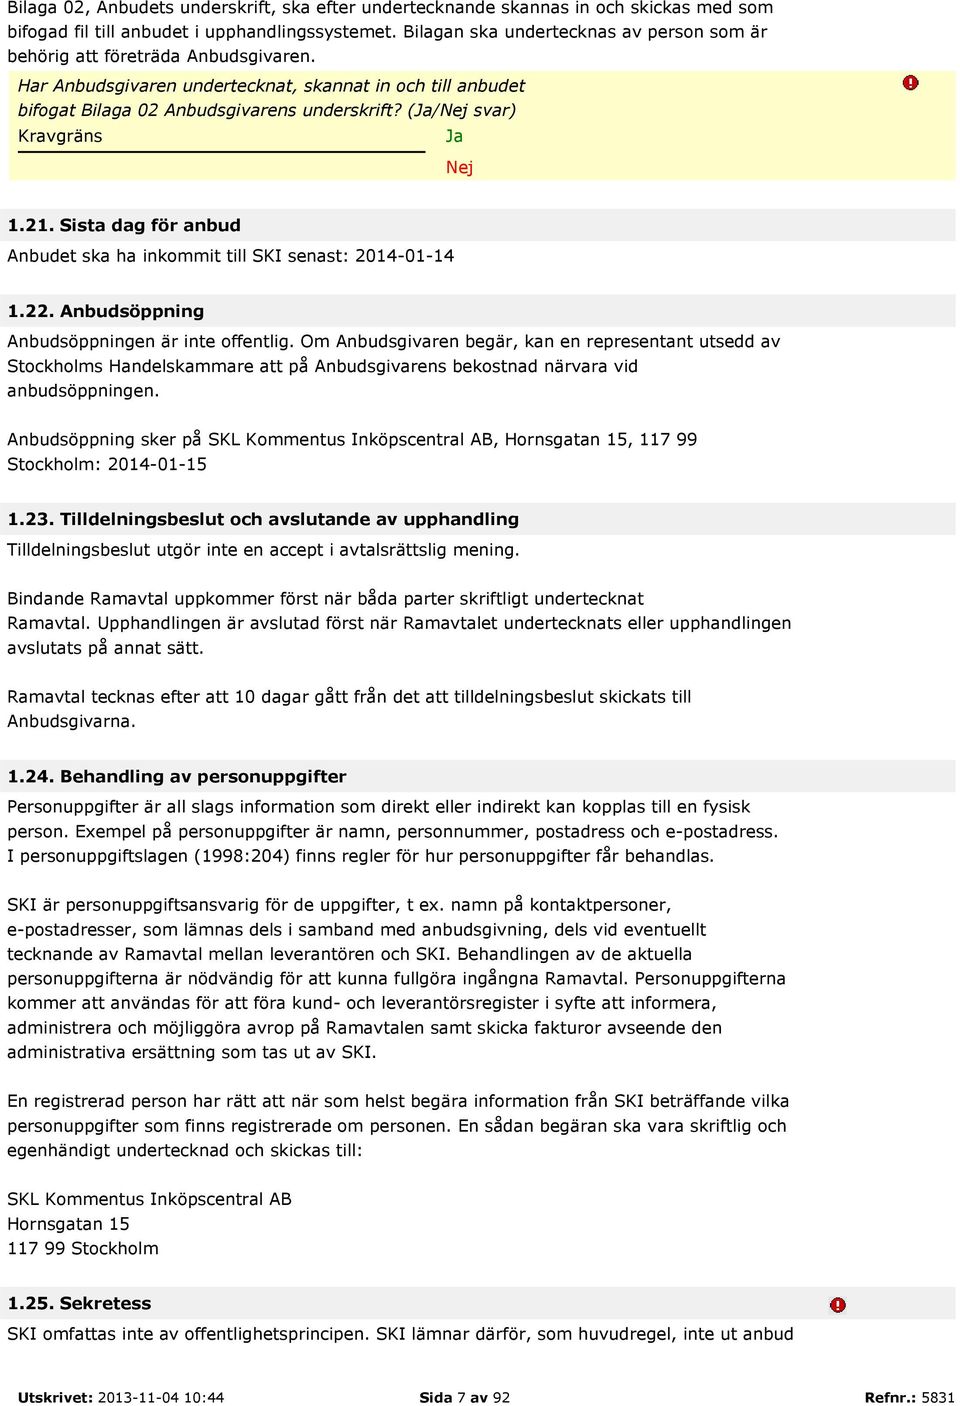 (/ svar) Kravgräns 1.21. Sista dag för anbud Anbudet ska ha inkommit till SKI senast: 2014-01-14 1.22. Anbudsöppning Anbudsöppningen är inte offentlig.